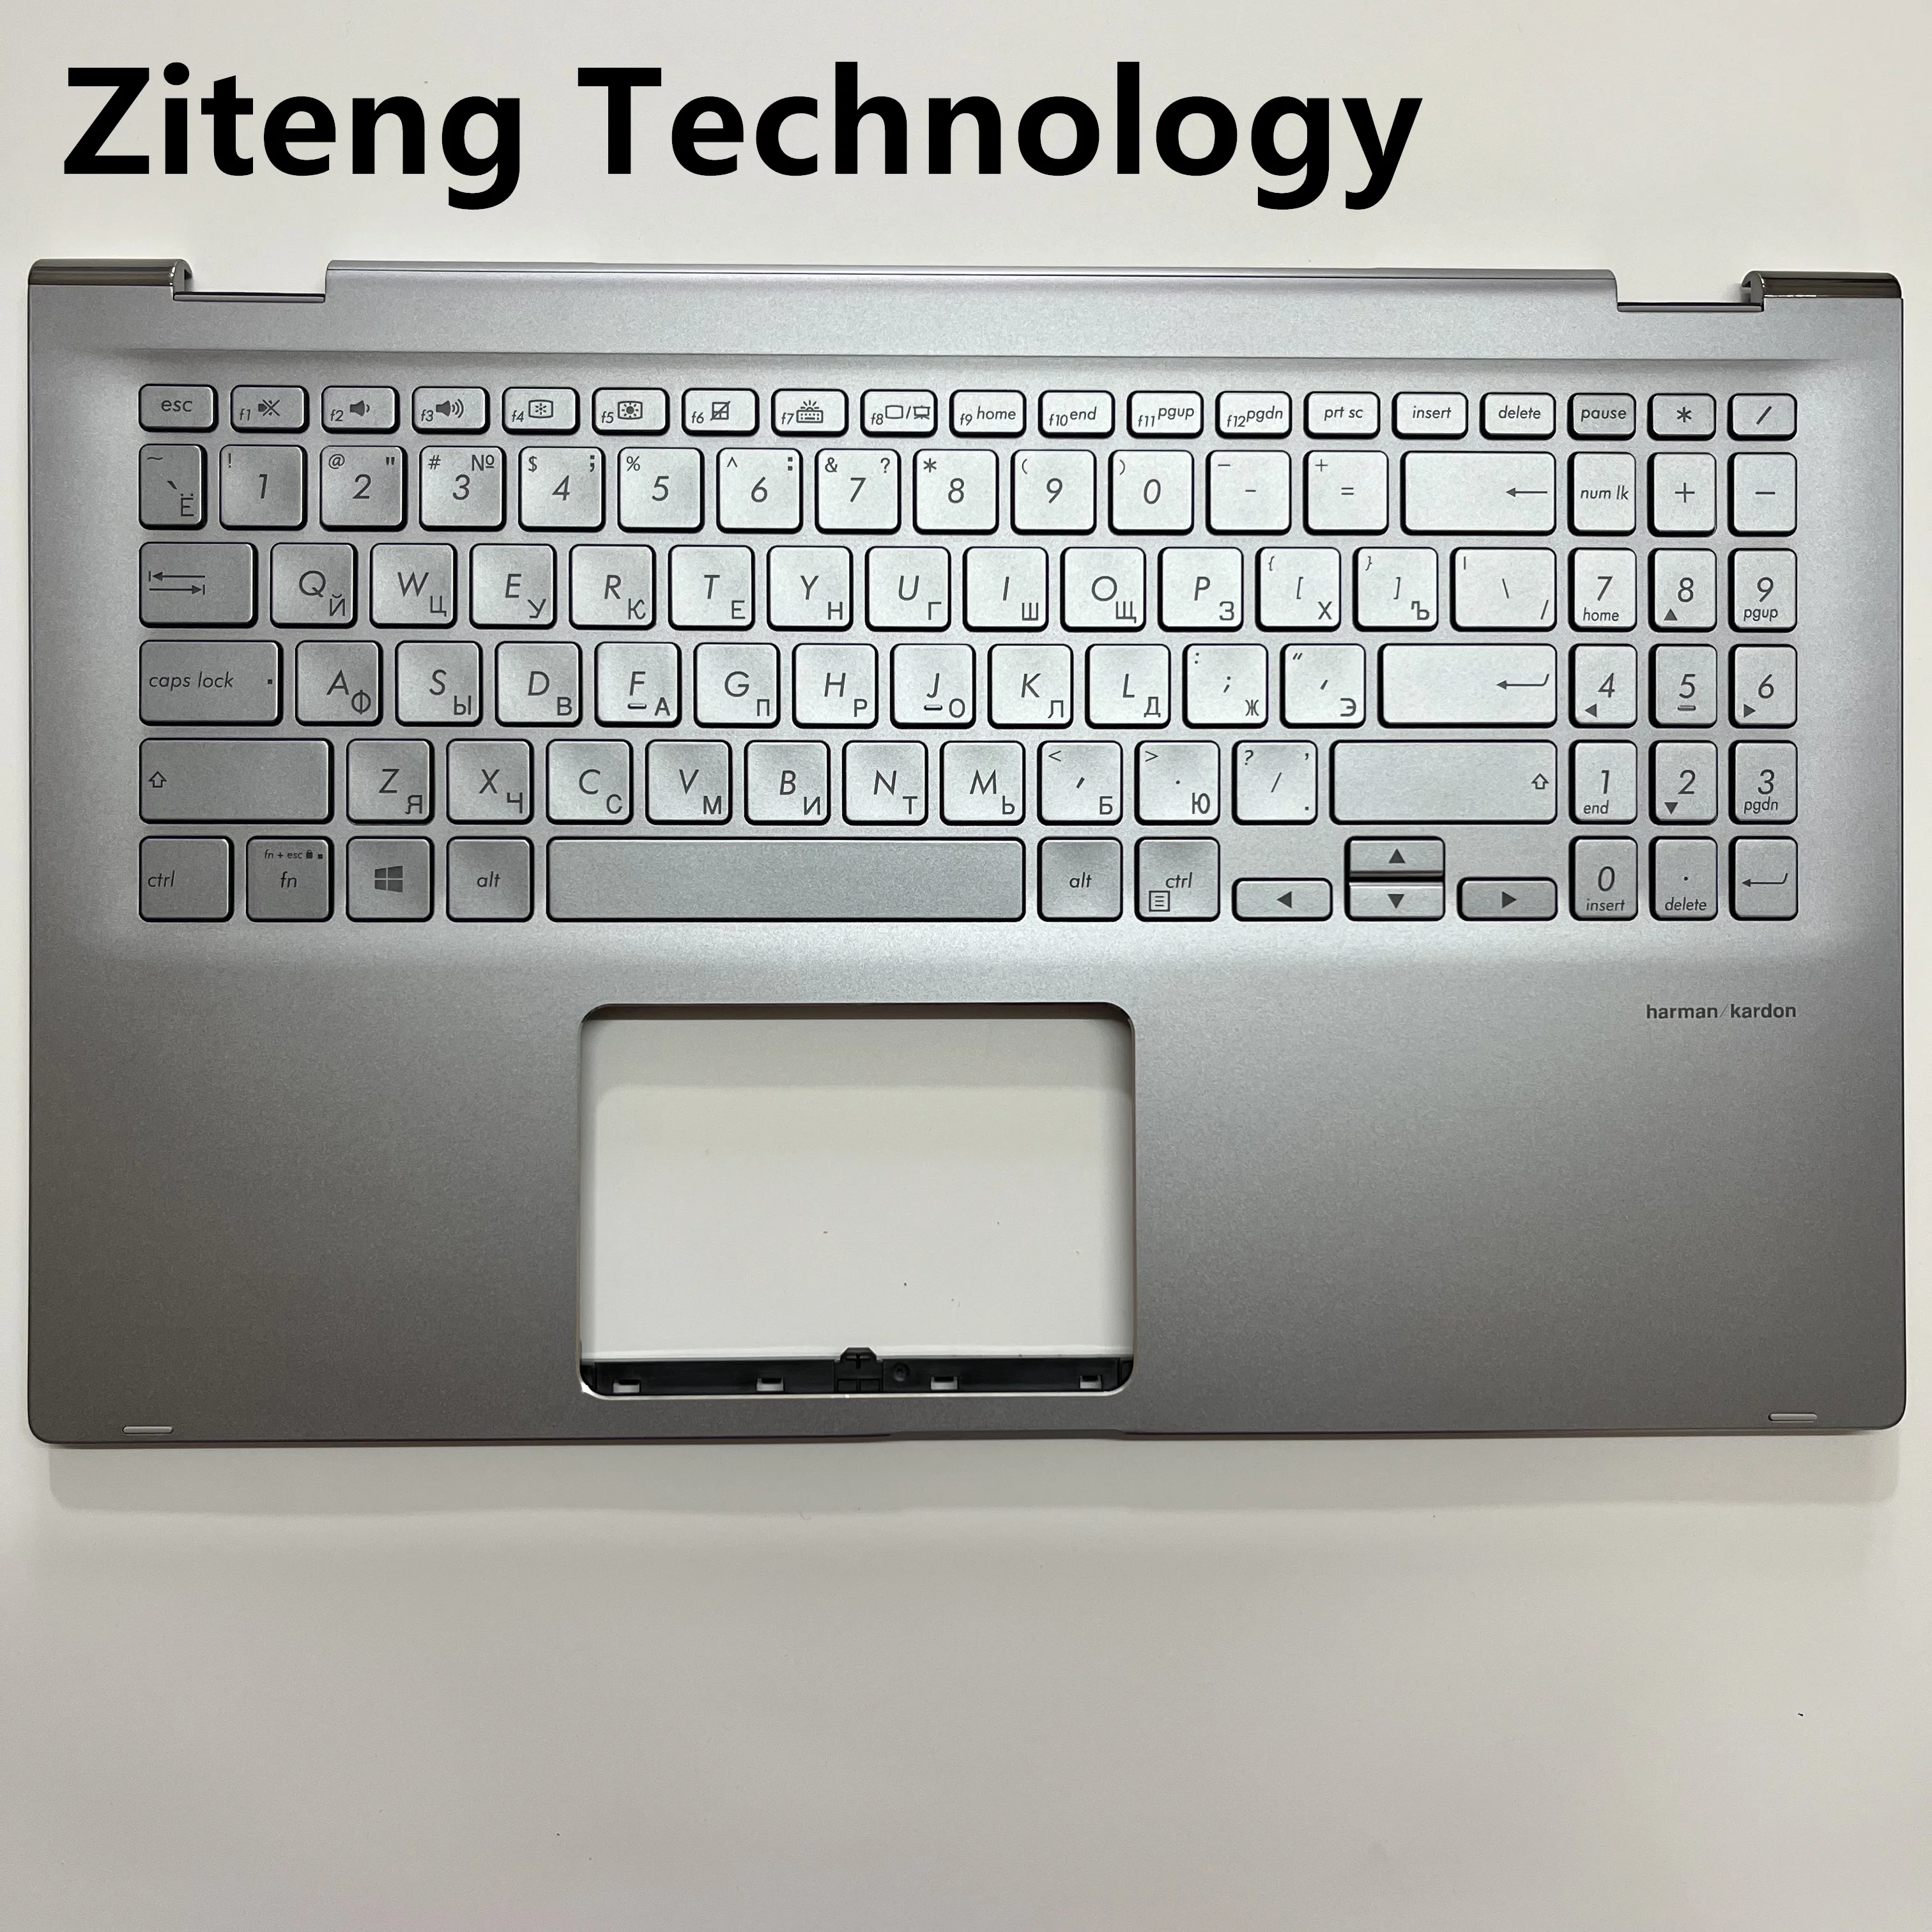 Новата Руска Клавиатура за лаптоп Asus ZenBook UX562 UX562F UX562FA UX562FDX Silver серия BG